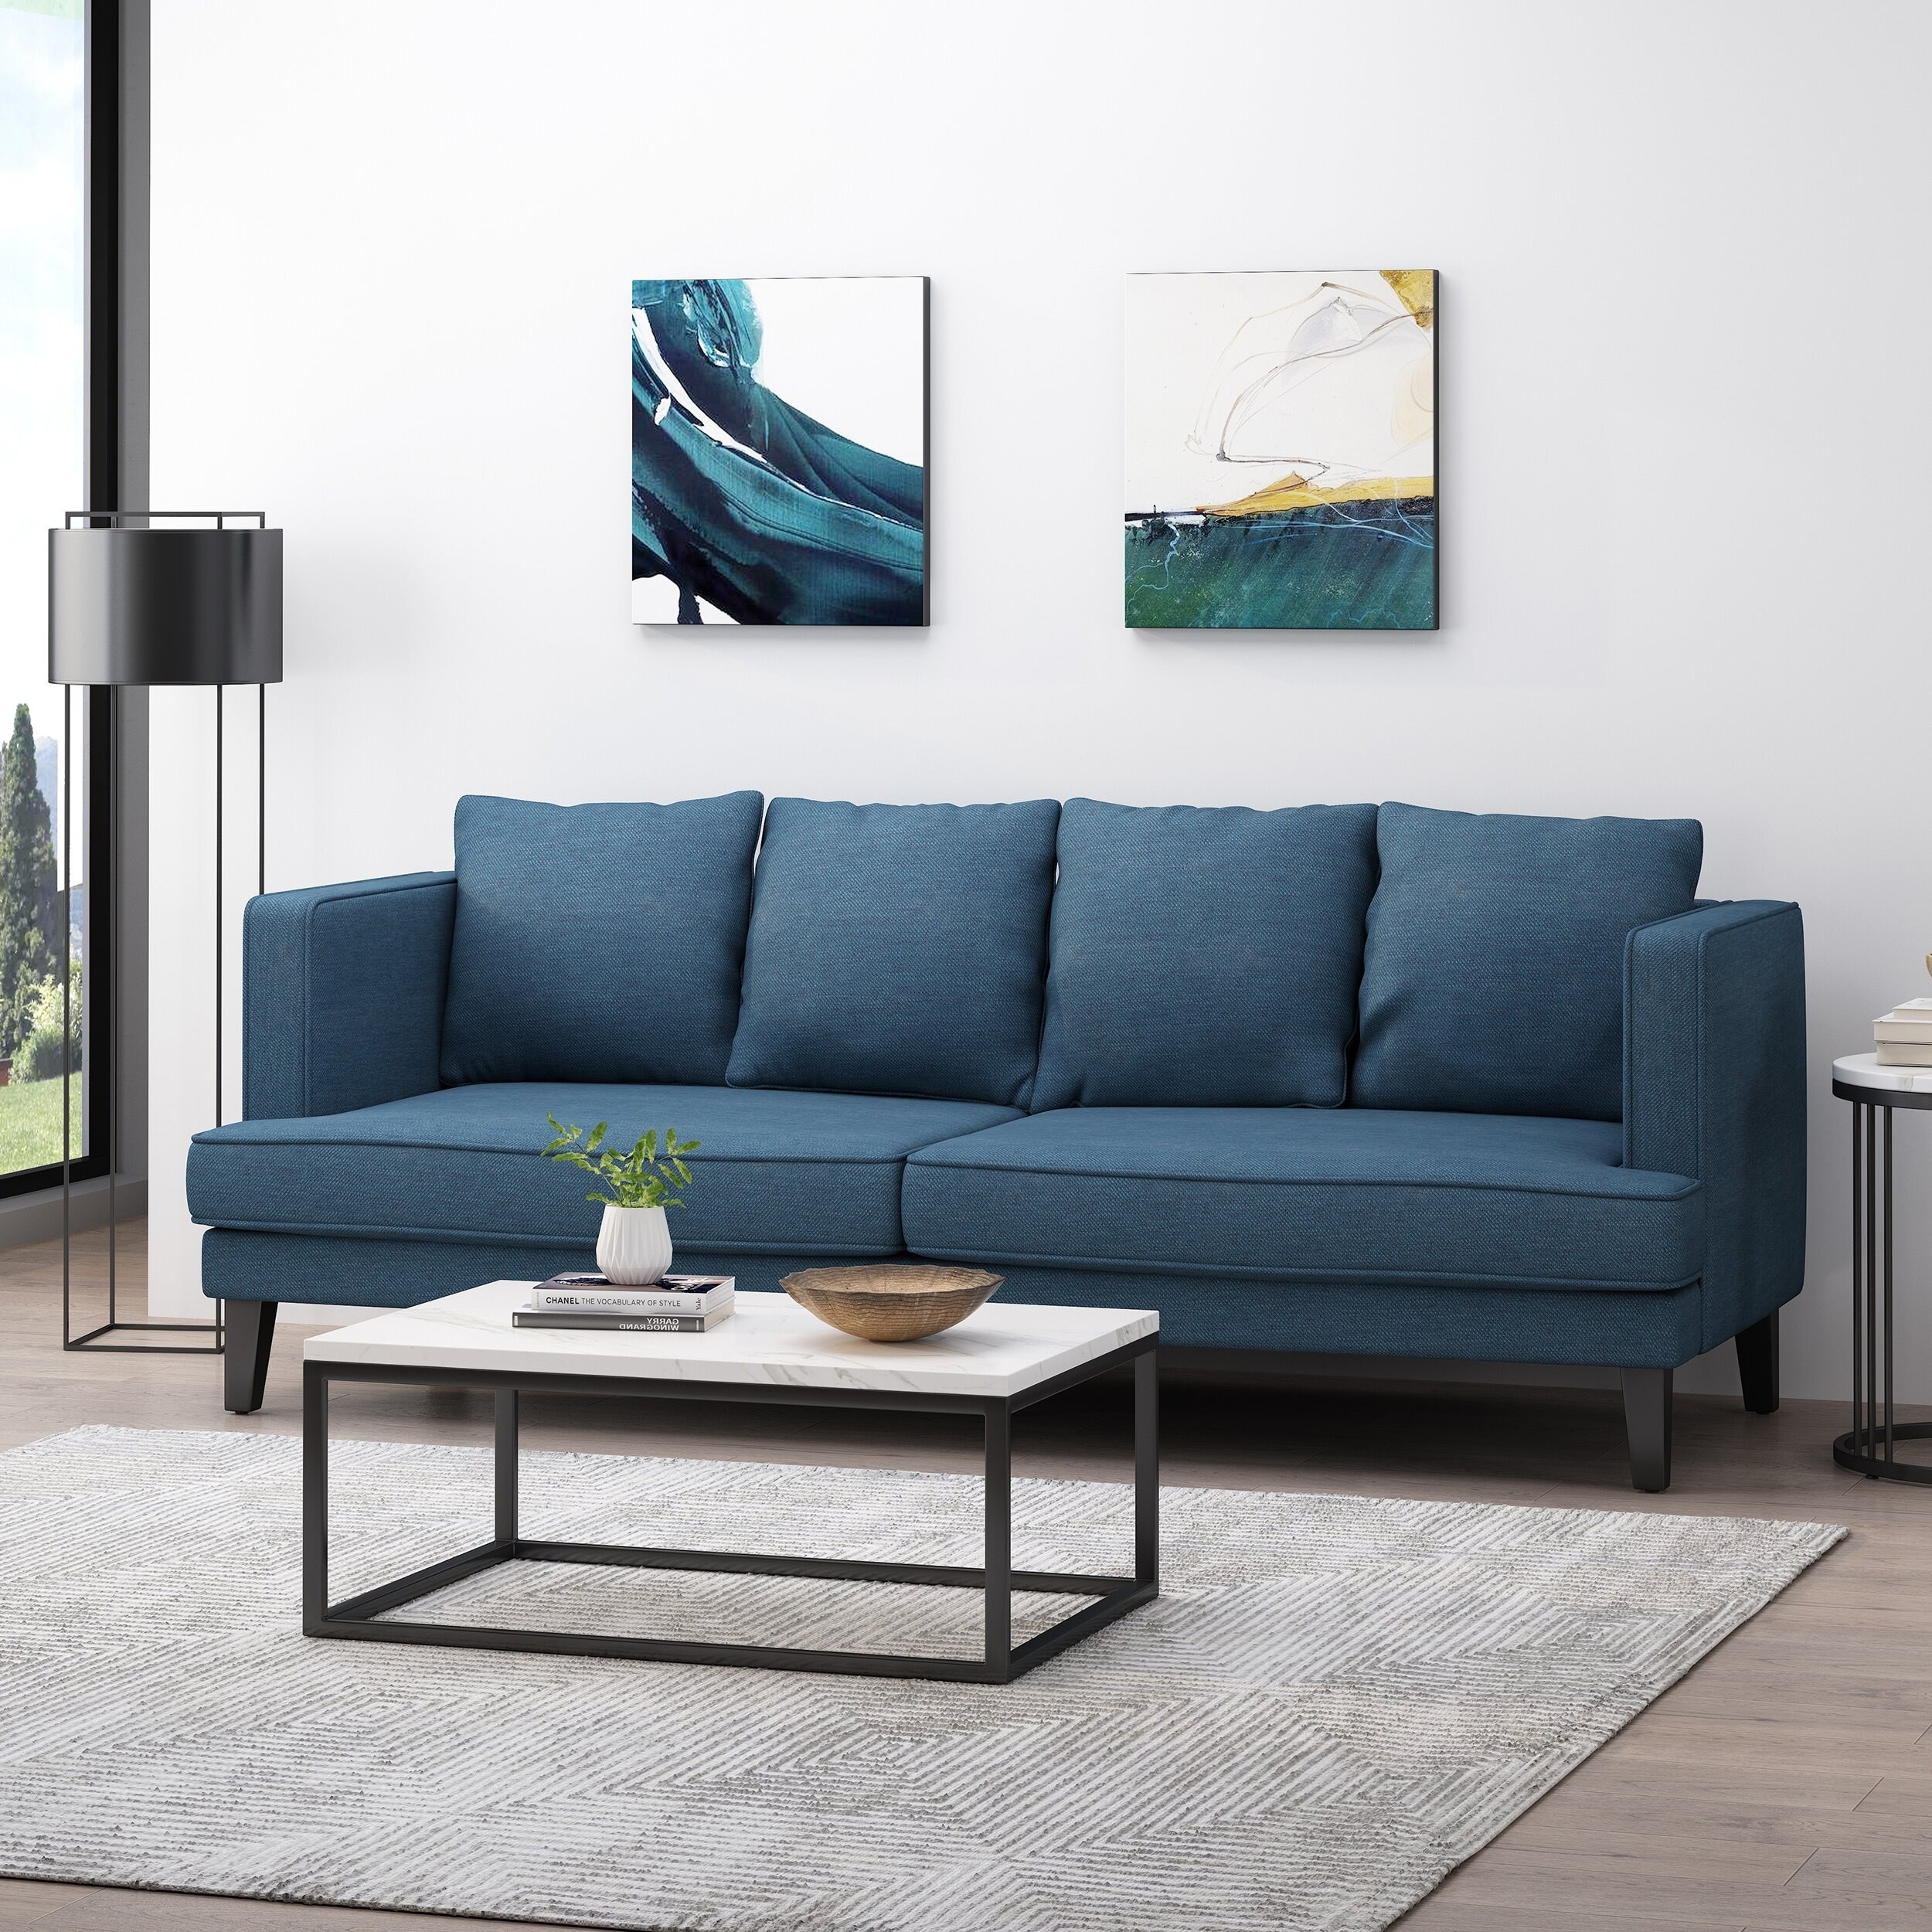 A dark blue sofa is shown